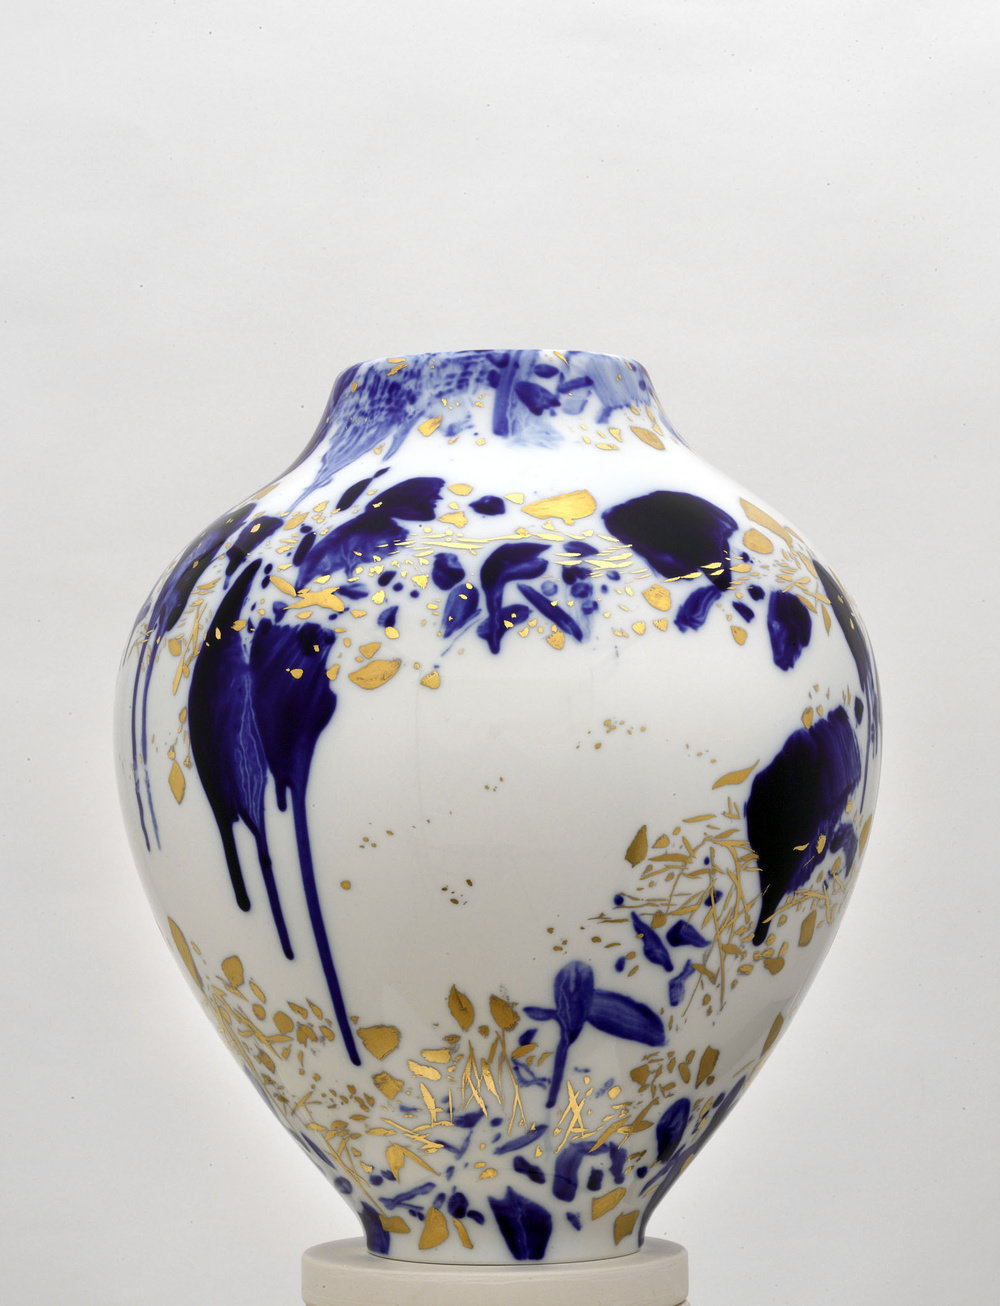 Chu teh chun, de neige, d’or, et d’azur, vase 3, (view 2), 2007 2008, porcelain, h 14 58, d 11 34  in